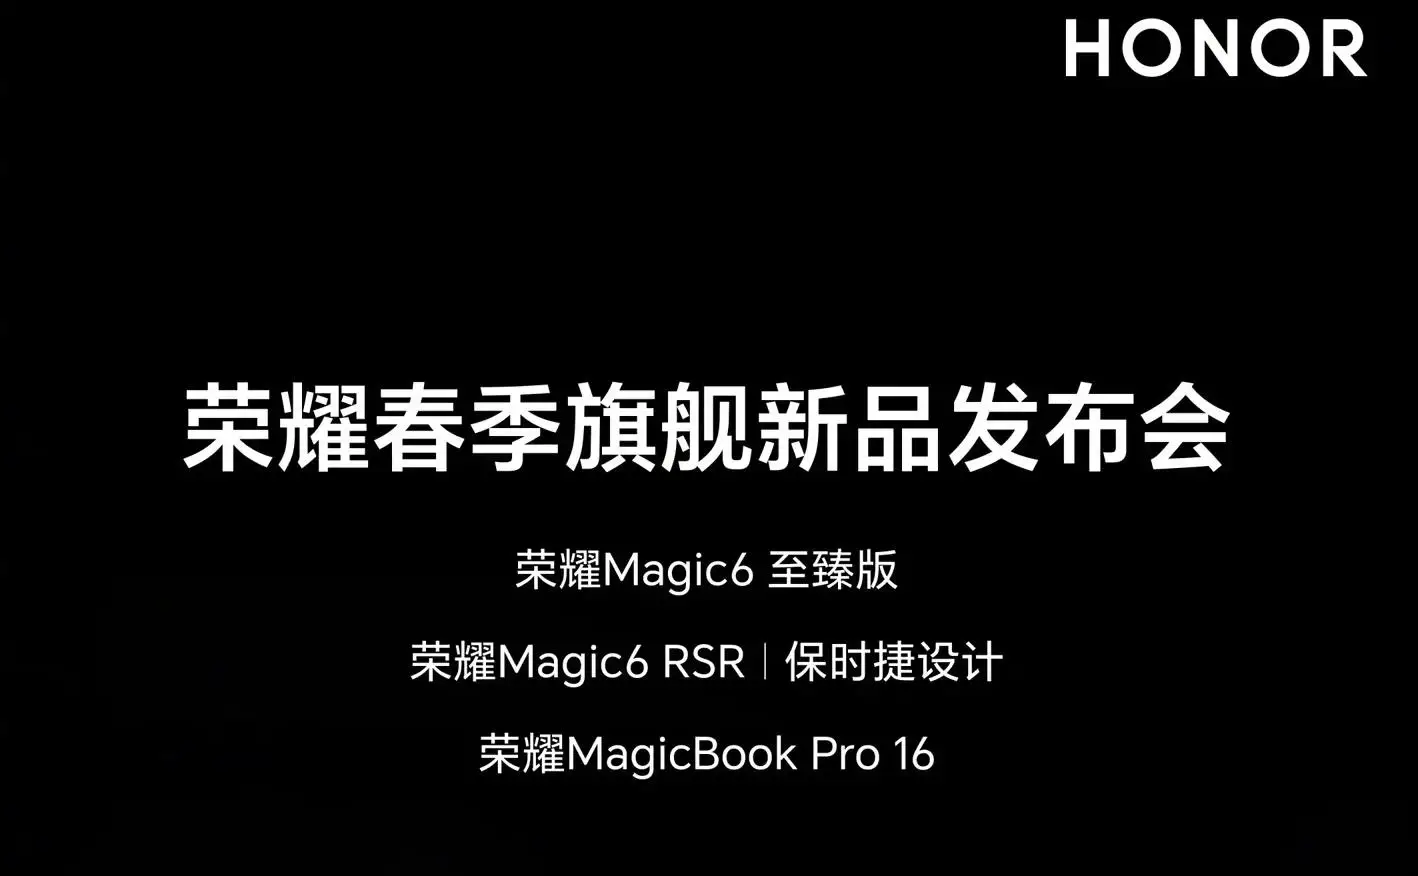 荣耀春季旗舰新品发布会定档3月18日 Honor Magic6 RSR保时捷版领衔亮相